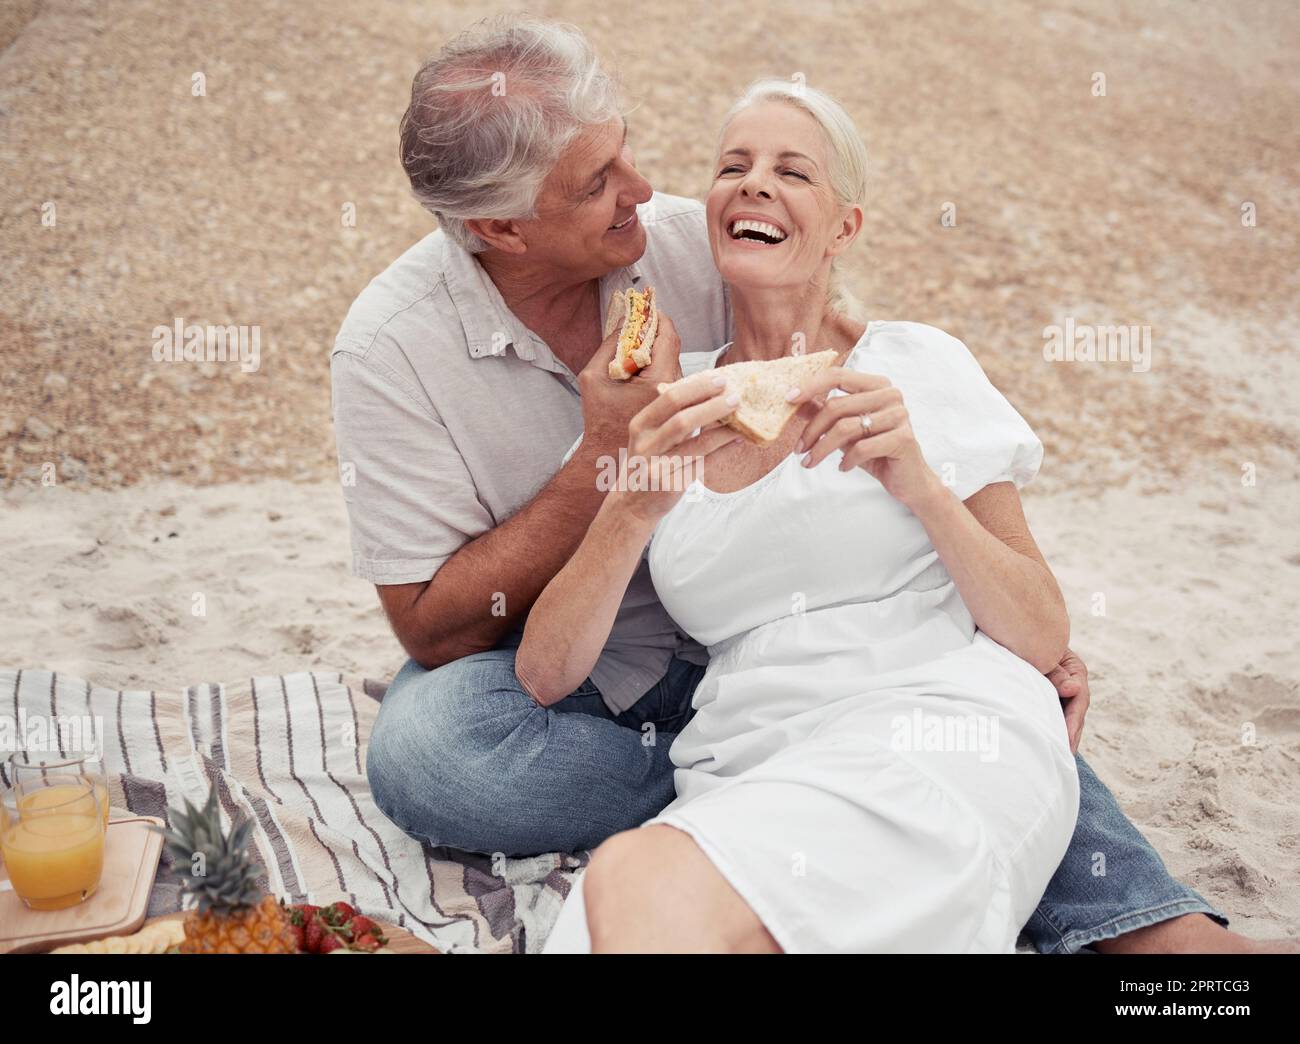 Amore e sana coppia anziana su picnic in spiaggia mangiare panino con conversazione divertente per il benessere, la salute o la pensione. Donna e uomo anziani all'aperto con pane al formaggio insieme a terra Foto Stock